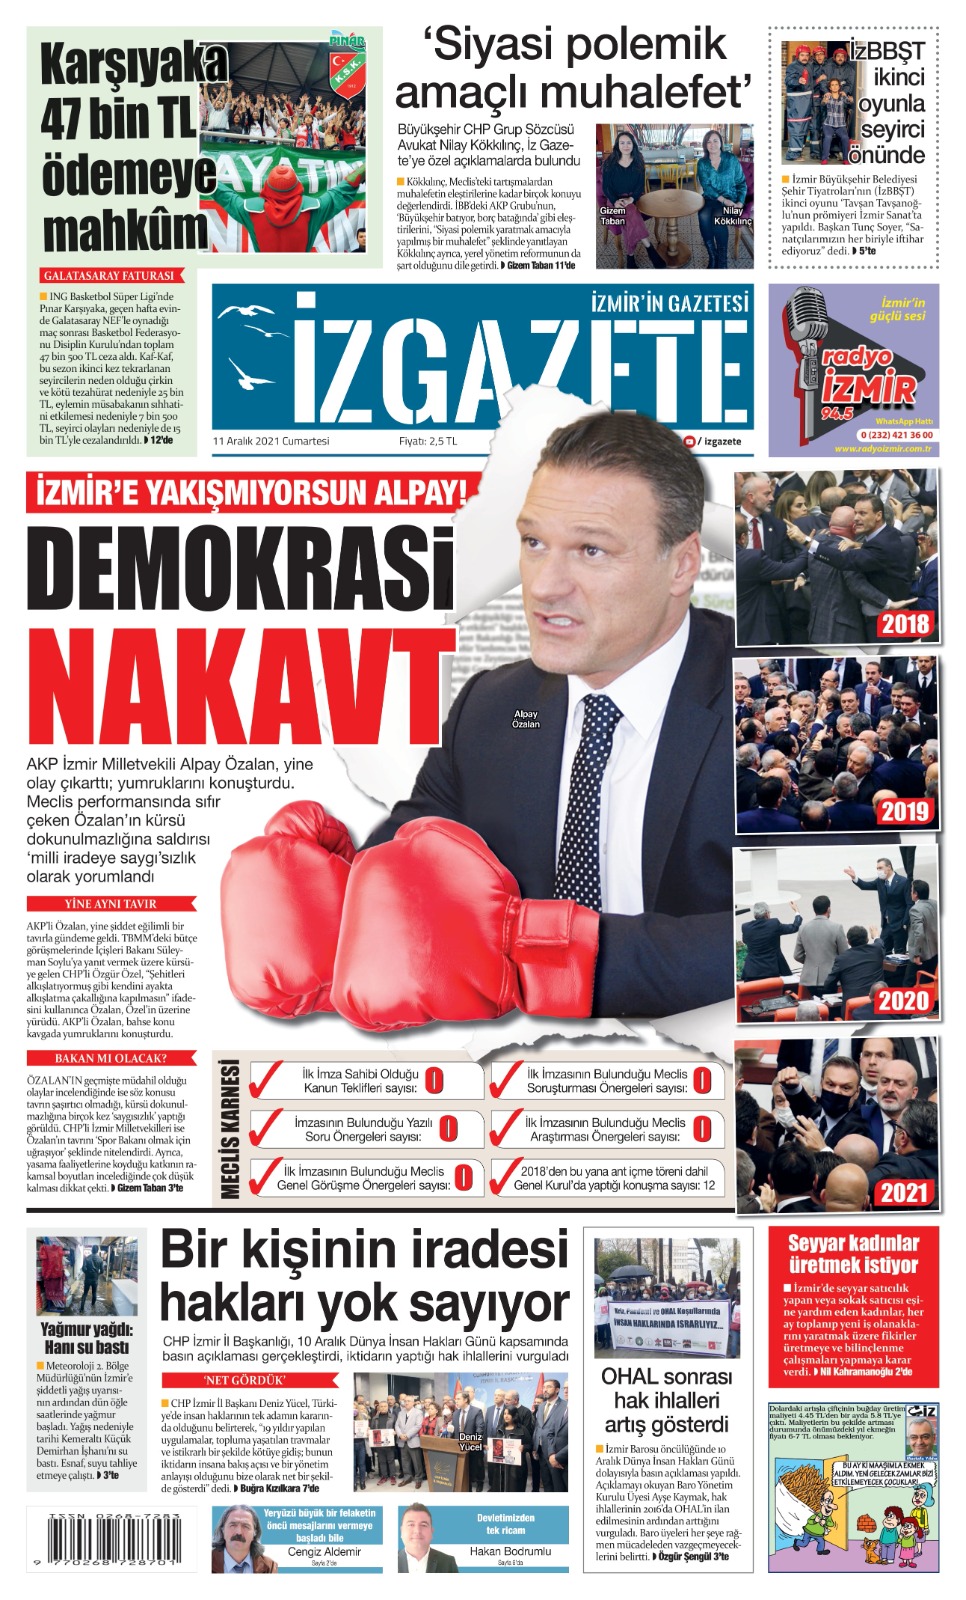 İz Gazete - İzmir'in Gazetesi - 11.12.2021 Manşeti